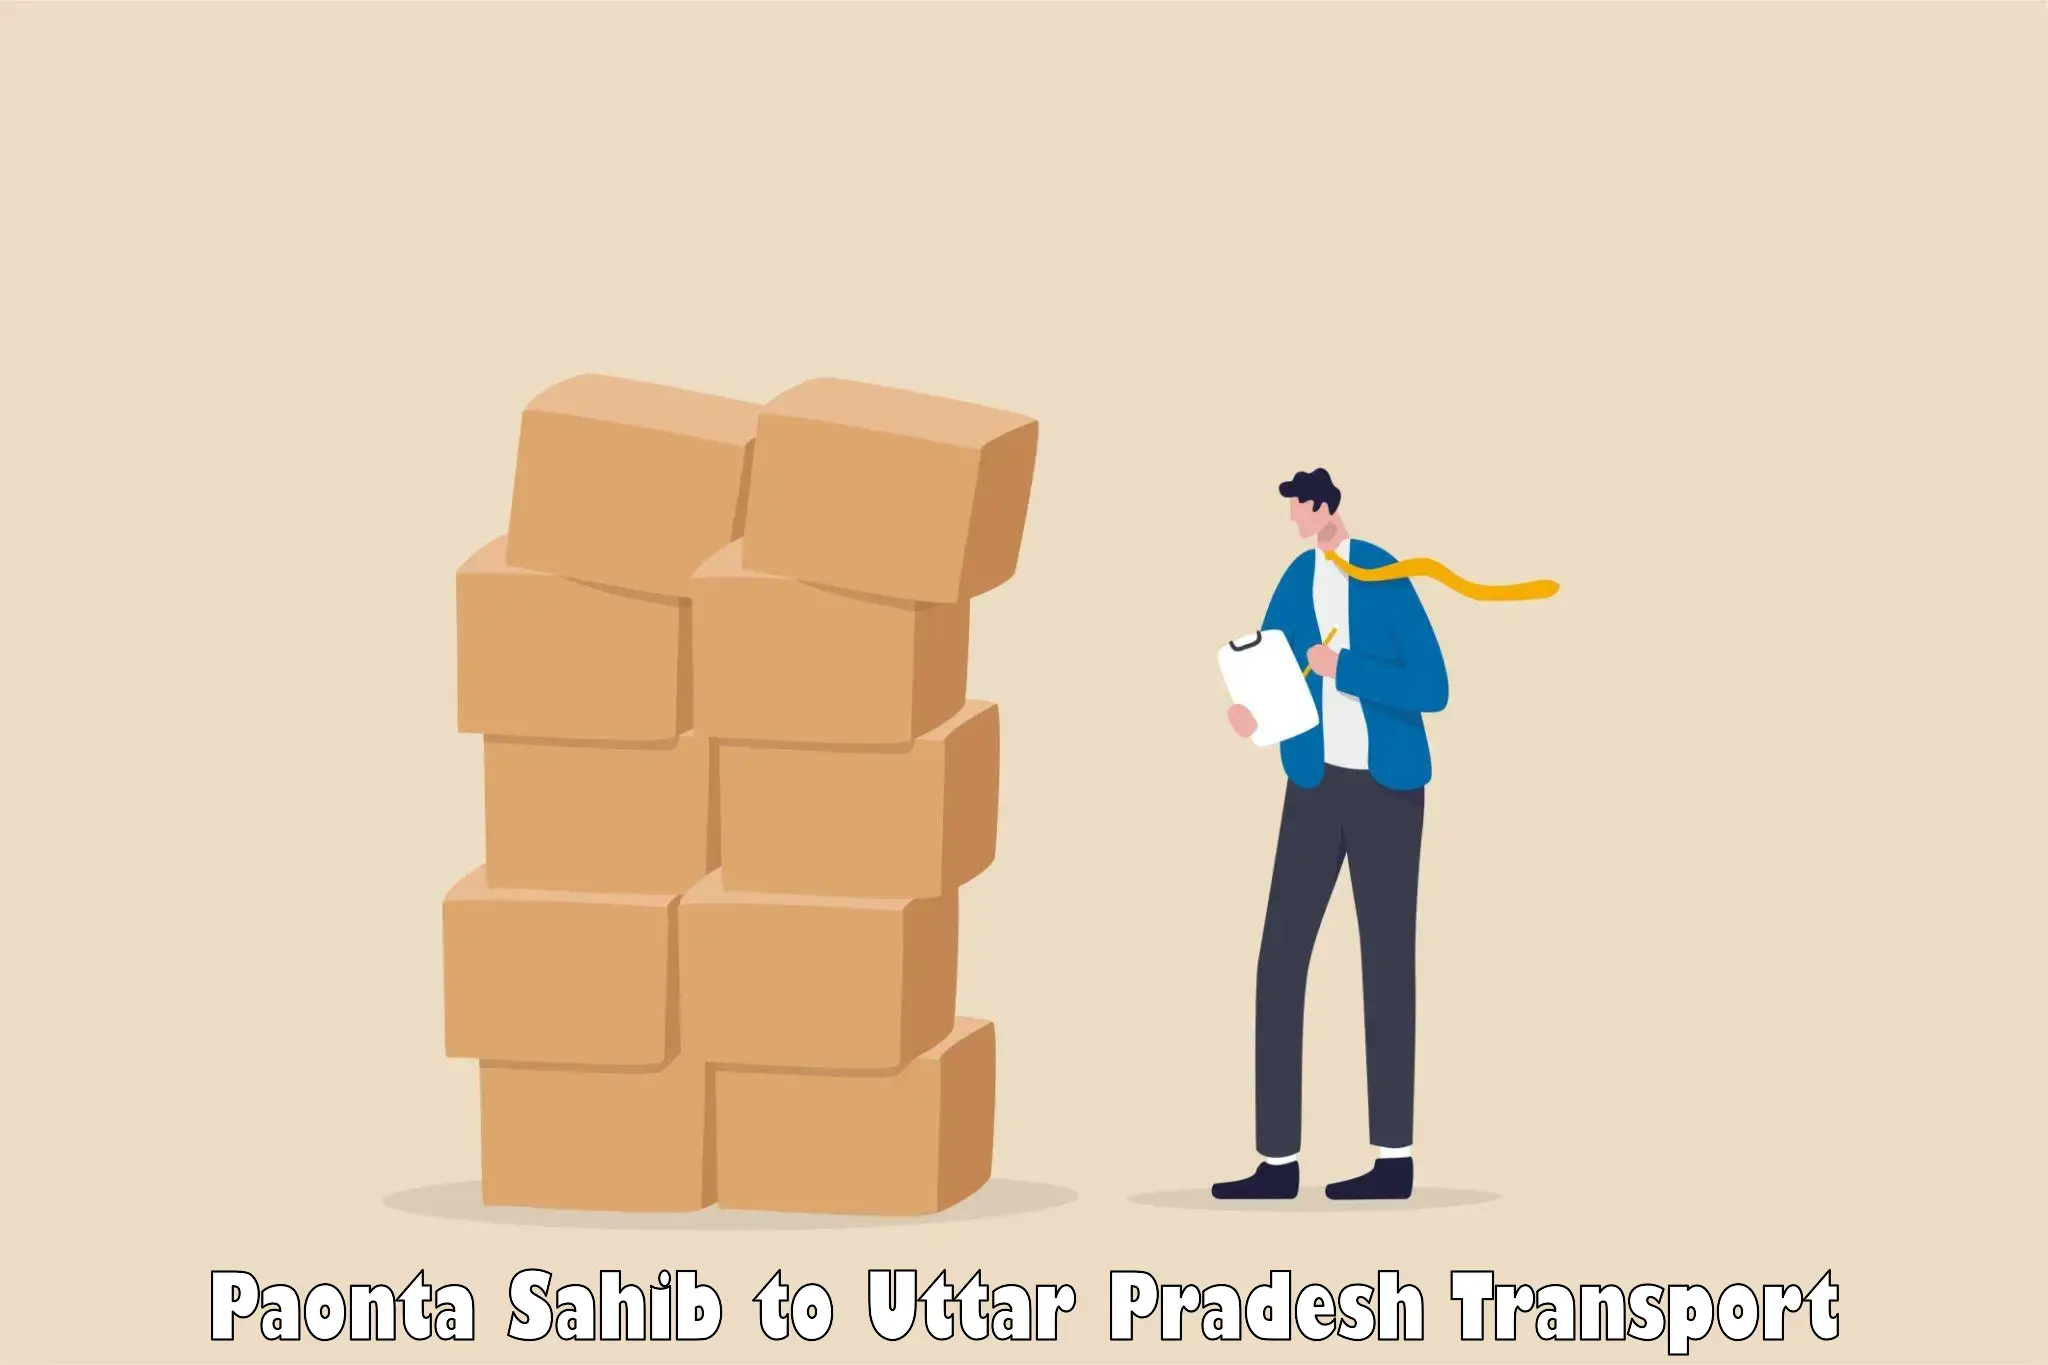 Daily transport service Paonta Sahib to Uttar Pradesh